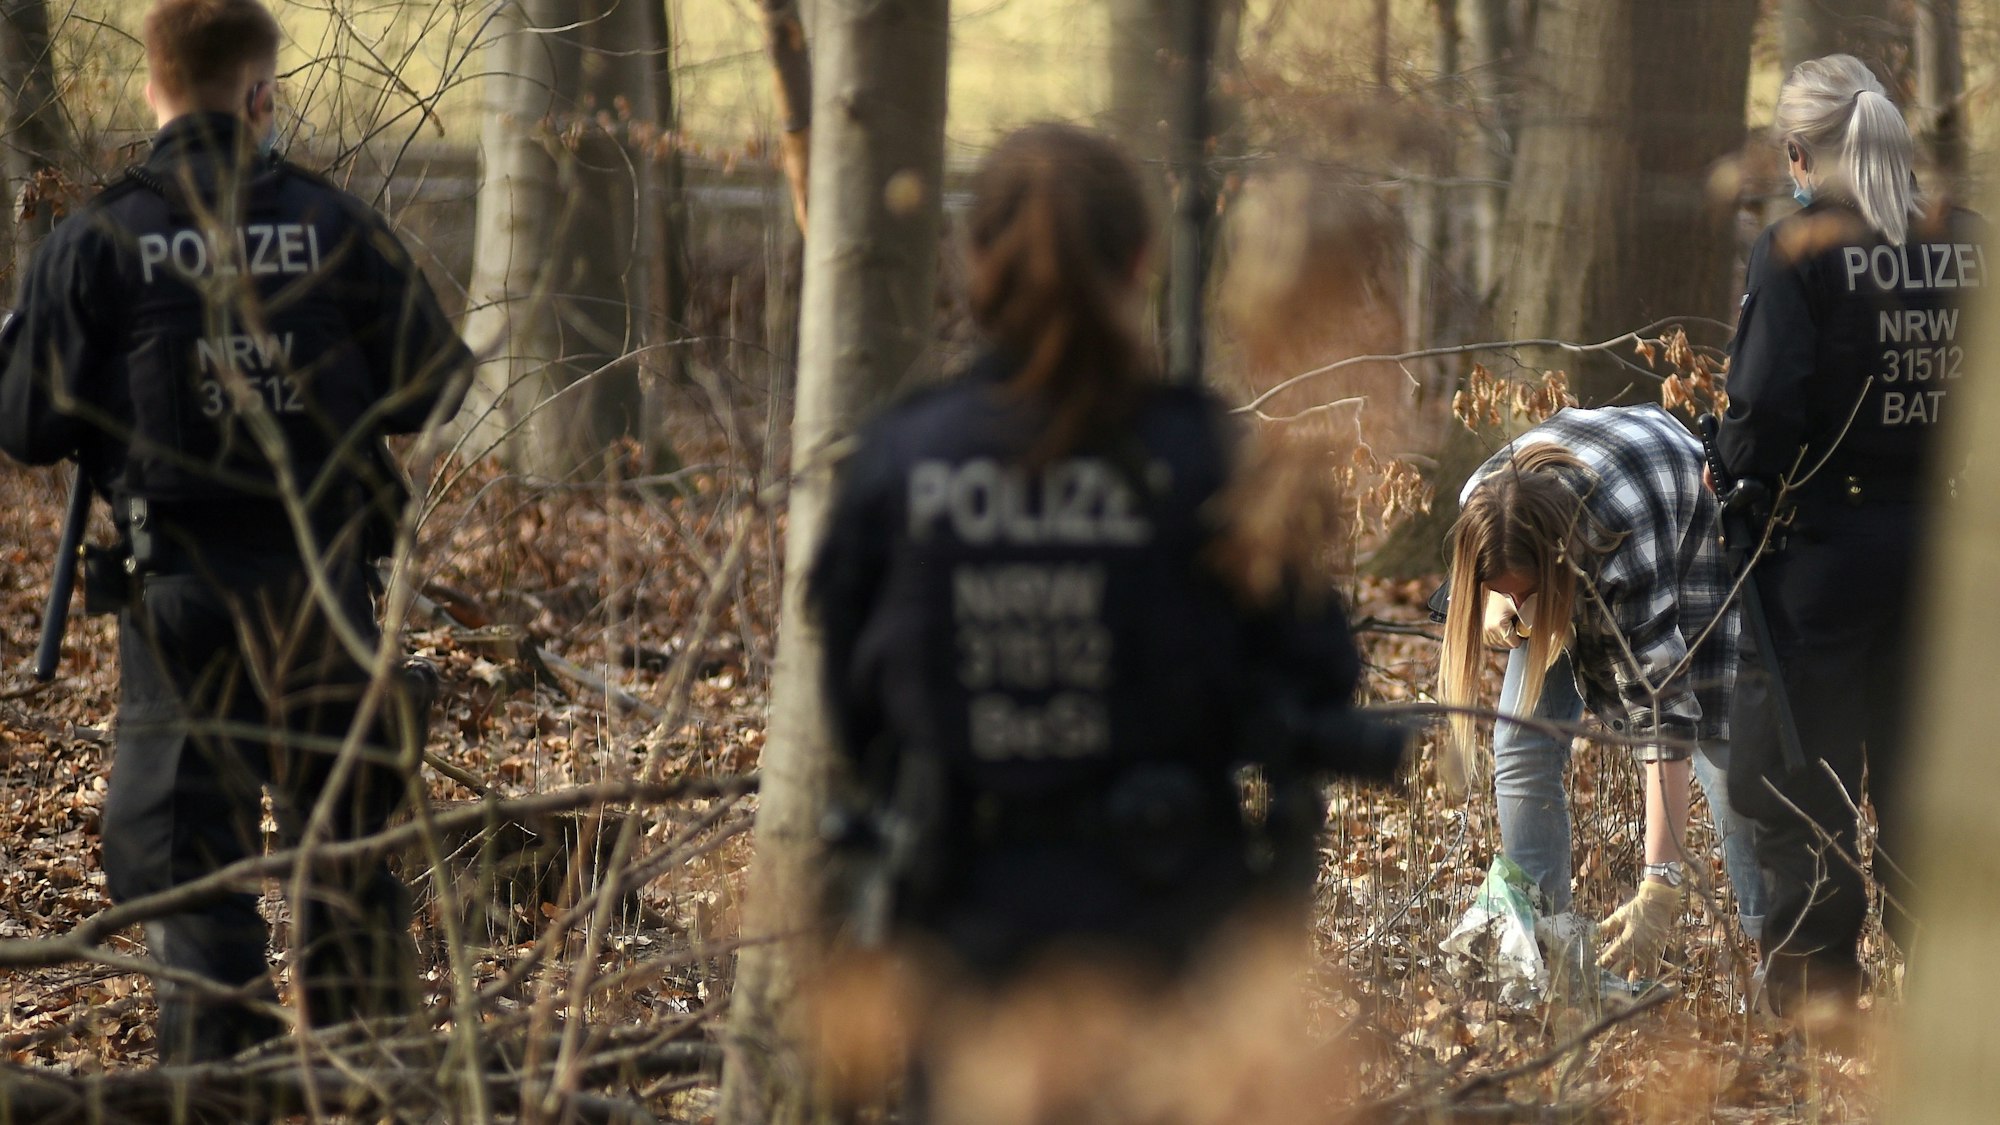 Polizeieinheiten durchsuchen den Wald nach einer Vergewaltigung einer Joggerin am Decksteiner Weiher.